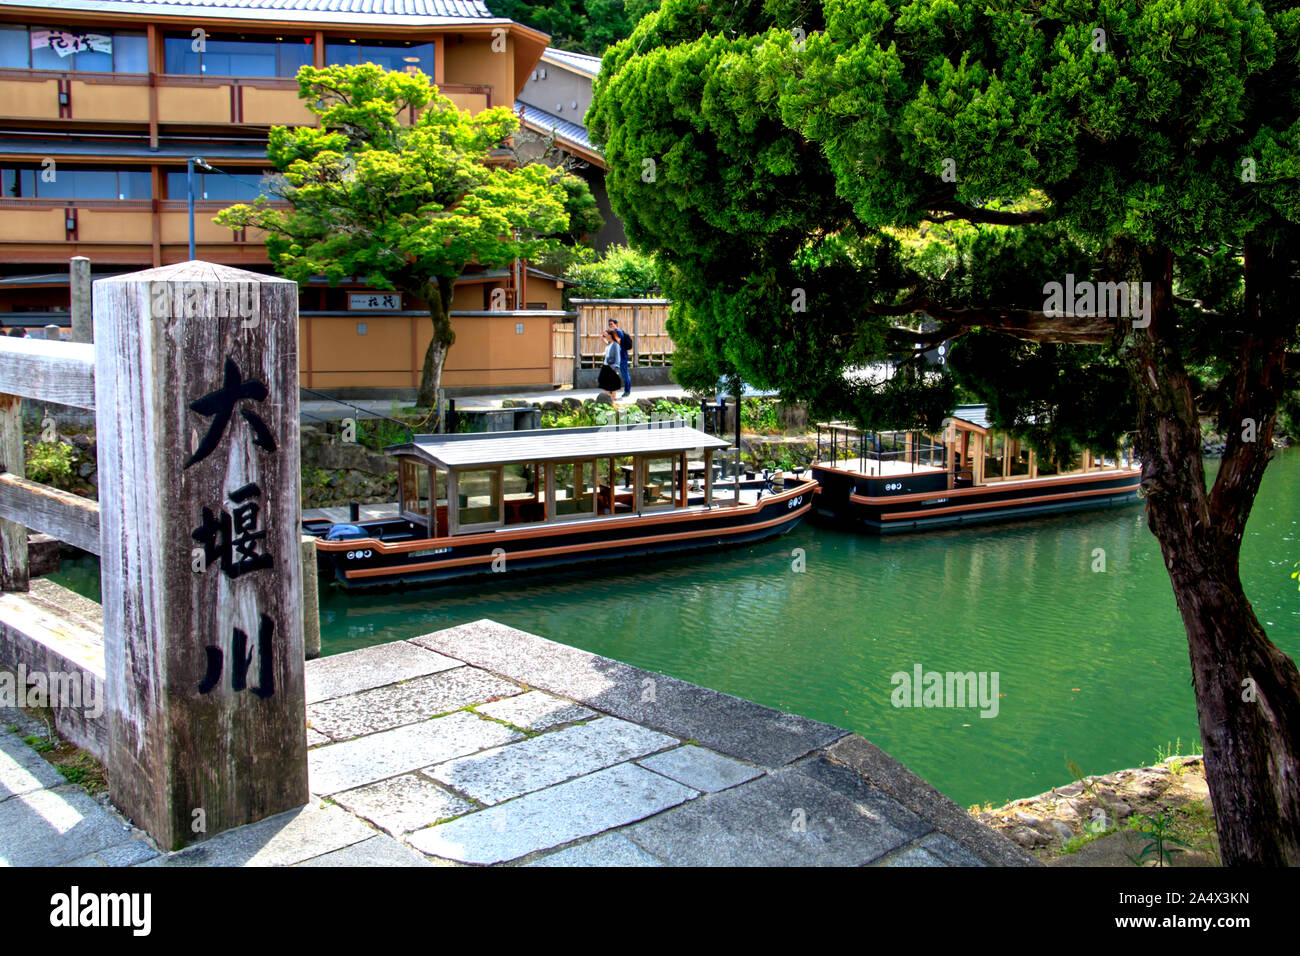 Bateaux amarrés dans un port de plaisance sur la rivière oi-gawa, quartier Arashiyama, Kyoto, Japon Banque D'Images